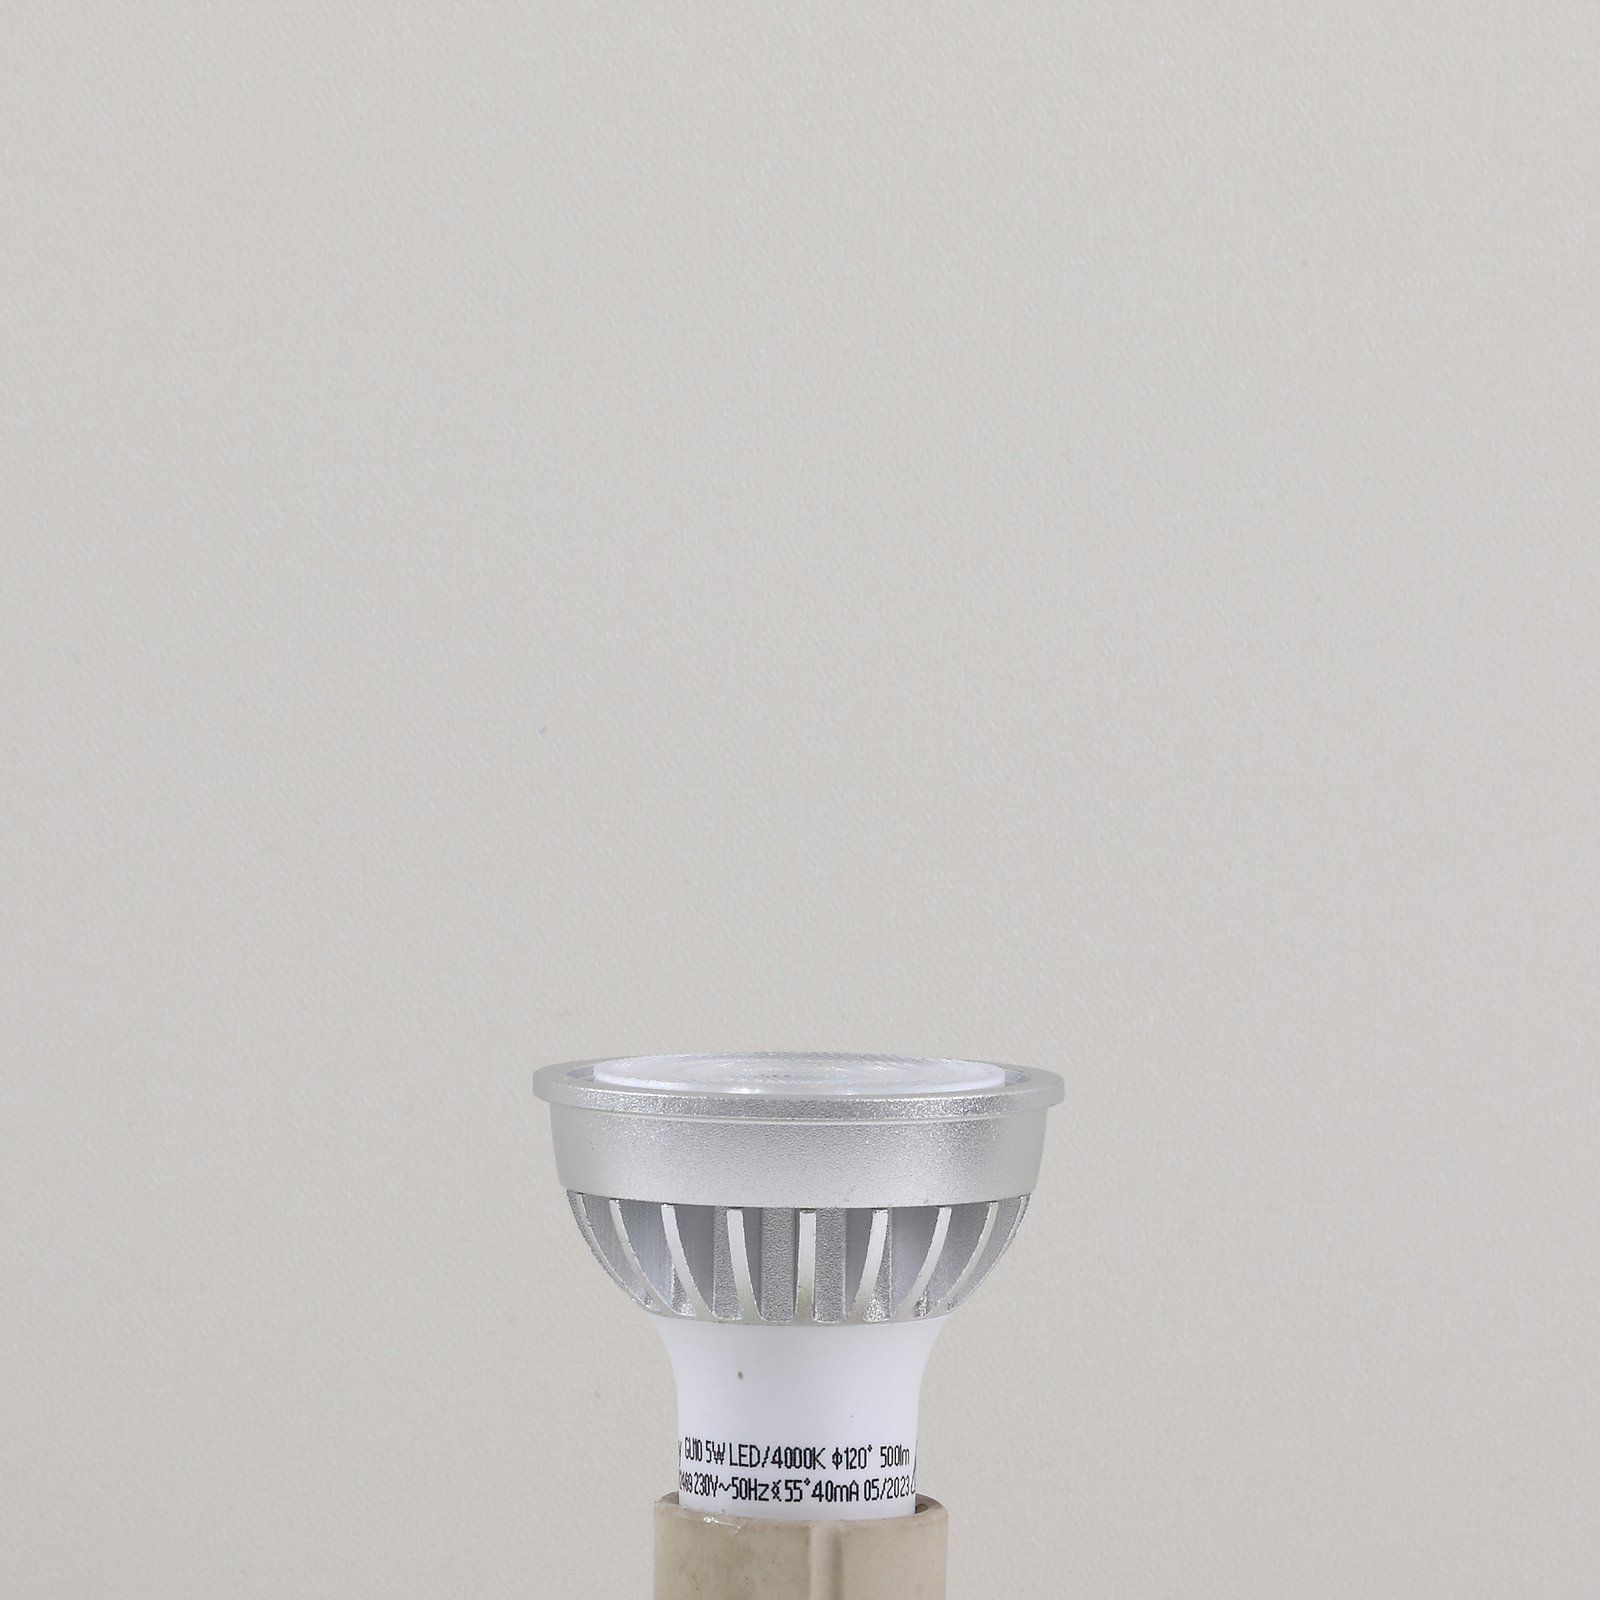 Lindby LED reflektor, GU10, 5 W, opál, 4 000 K, 55°